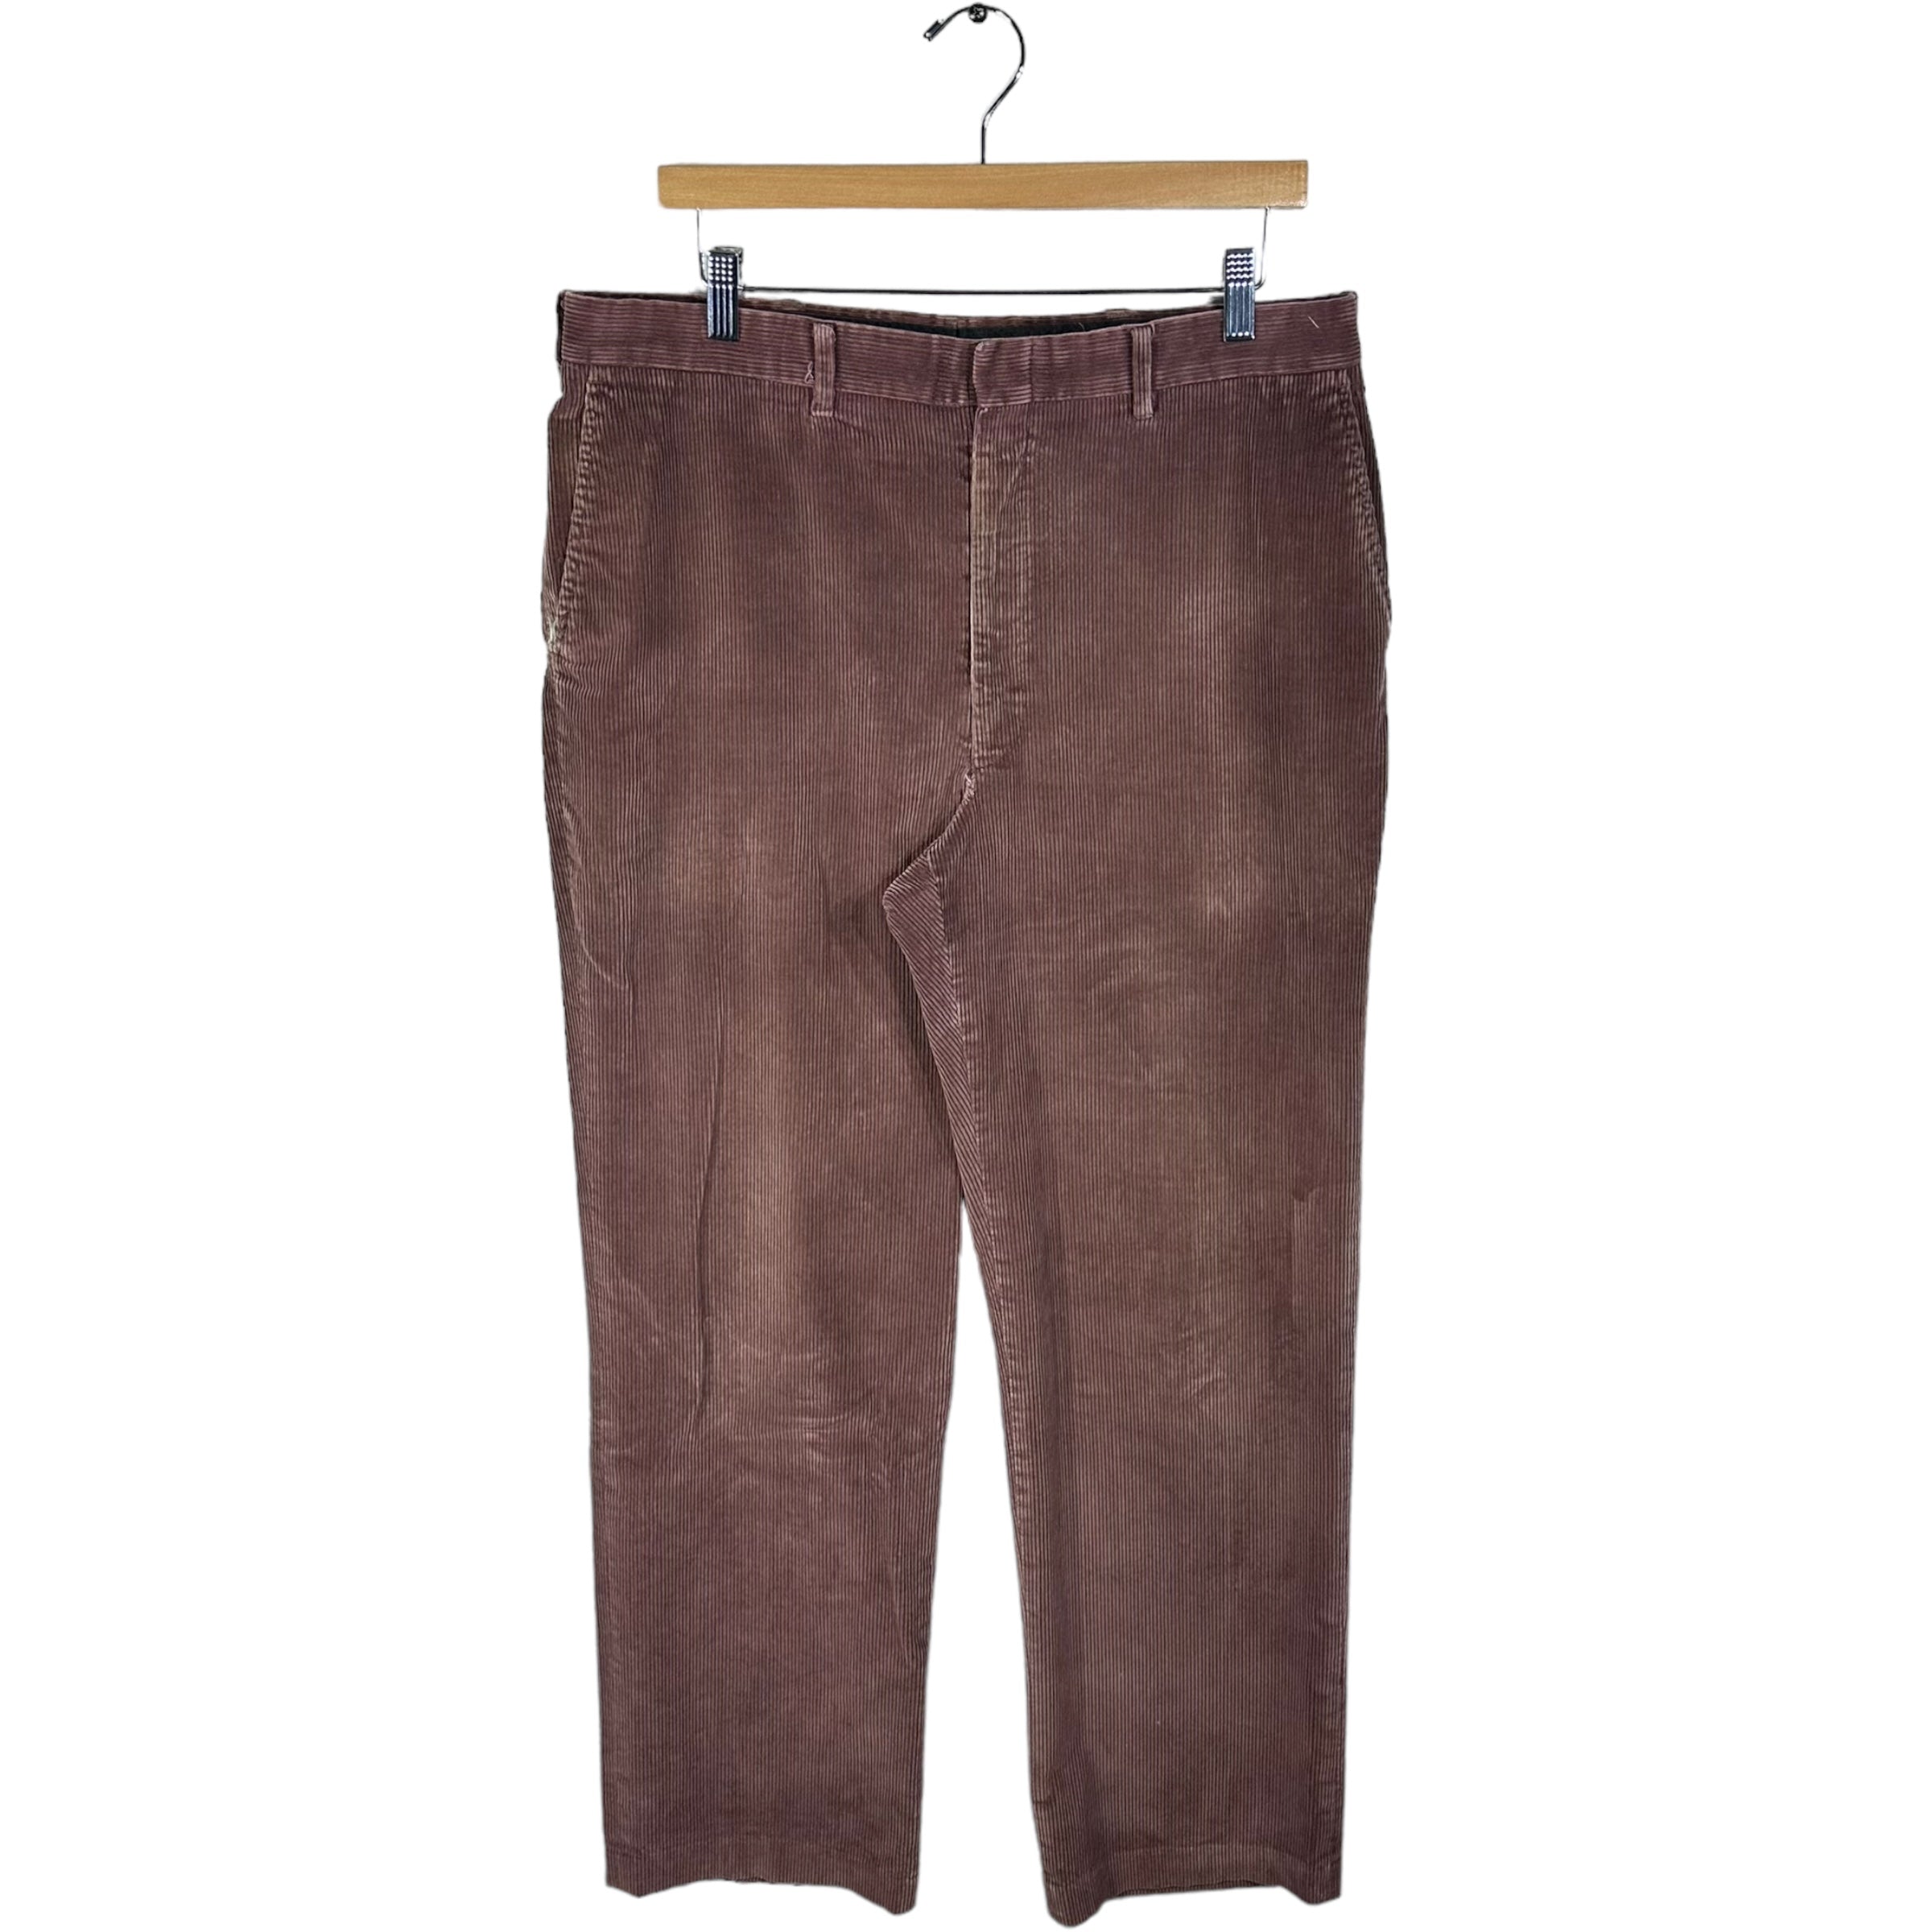 Vintage Hagar Casuals Corduroy Pants